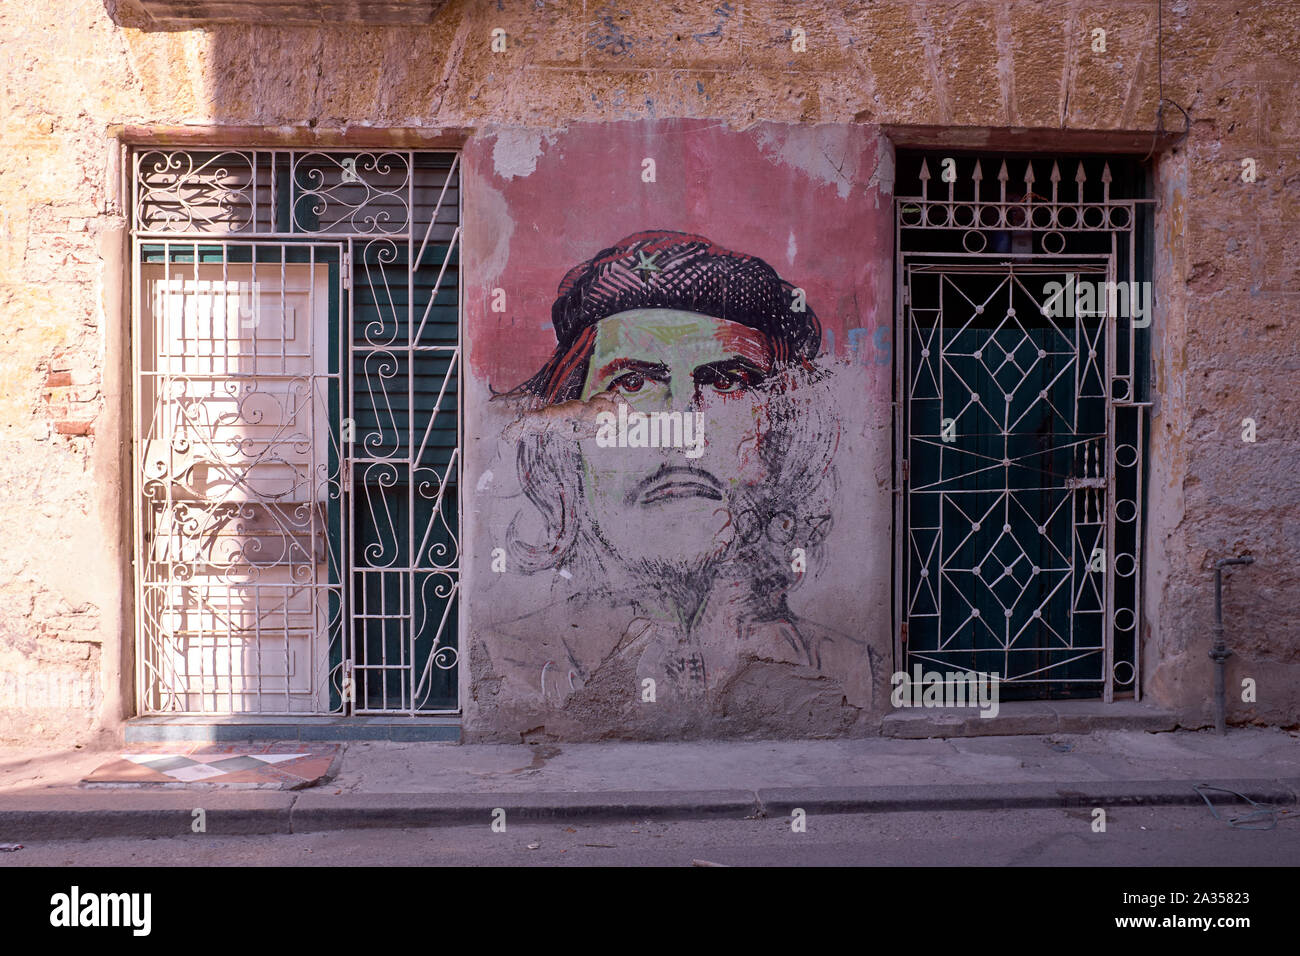 Graffitis politiques et art ornent les murs de La Havane, Cuba Banque D'Images